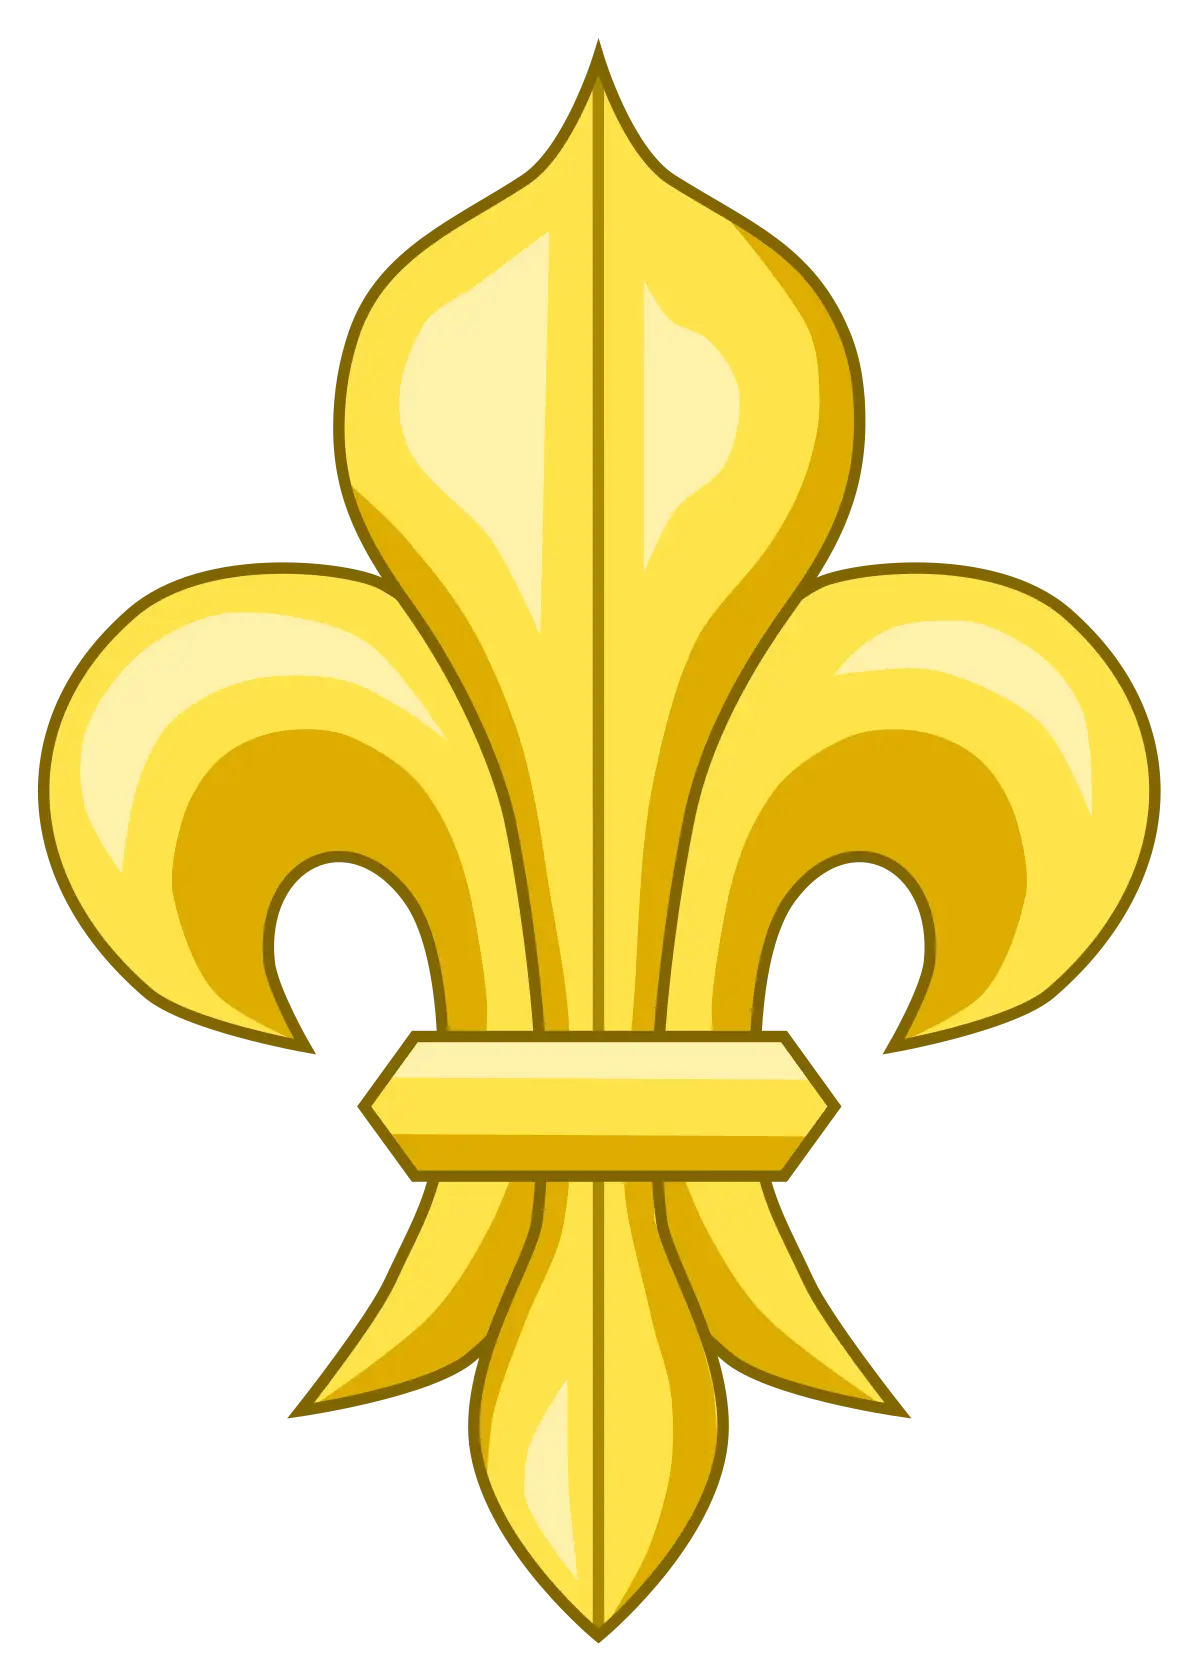 il fiore nello stemma di firenze - Qual è il fiore al centro dello stemma di Firenze